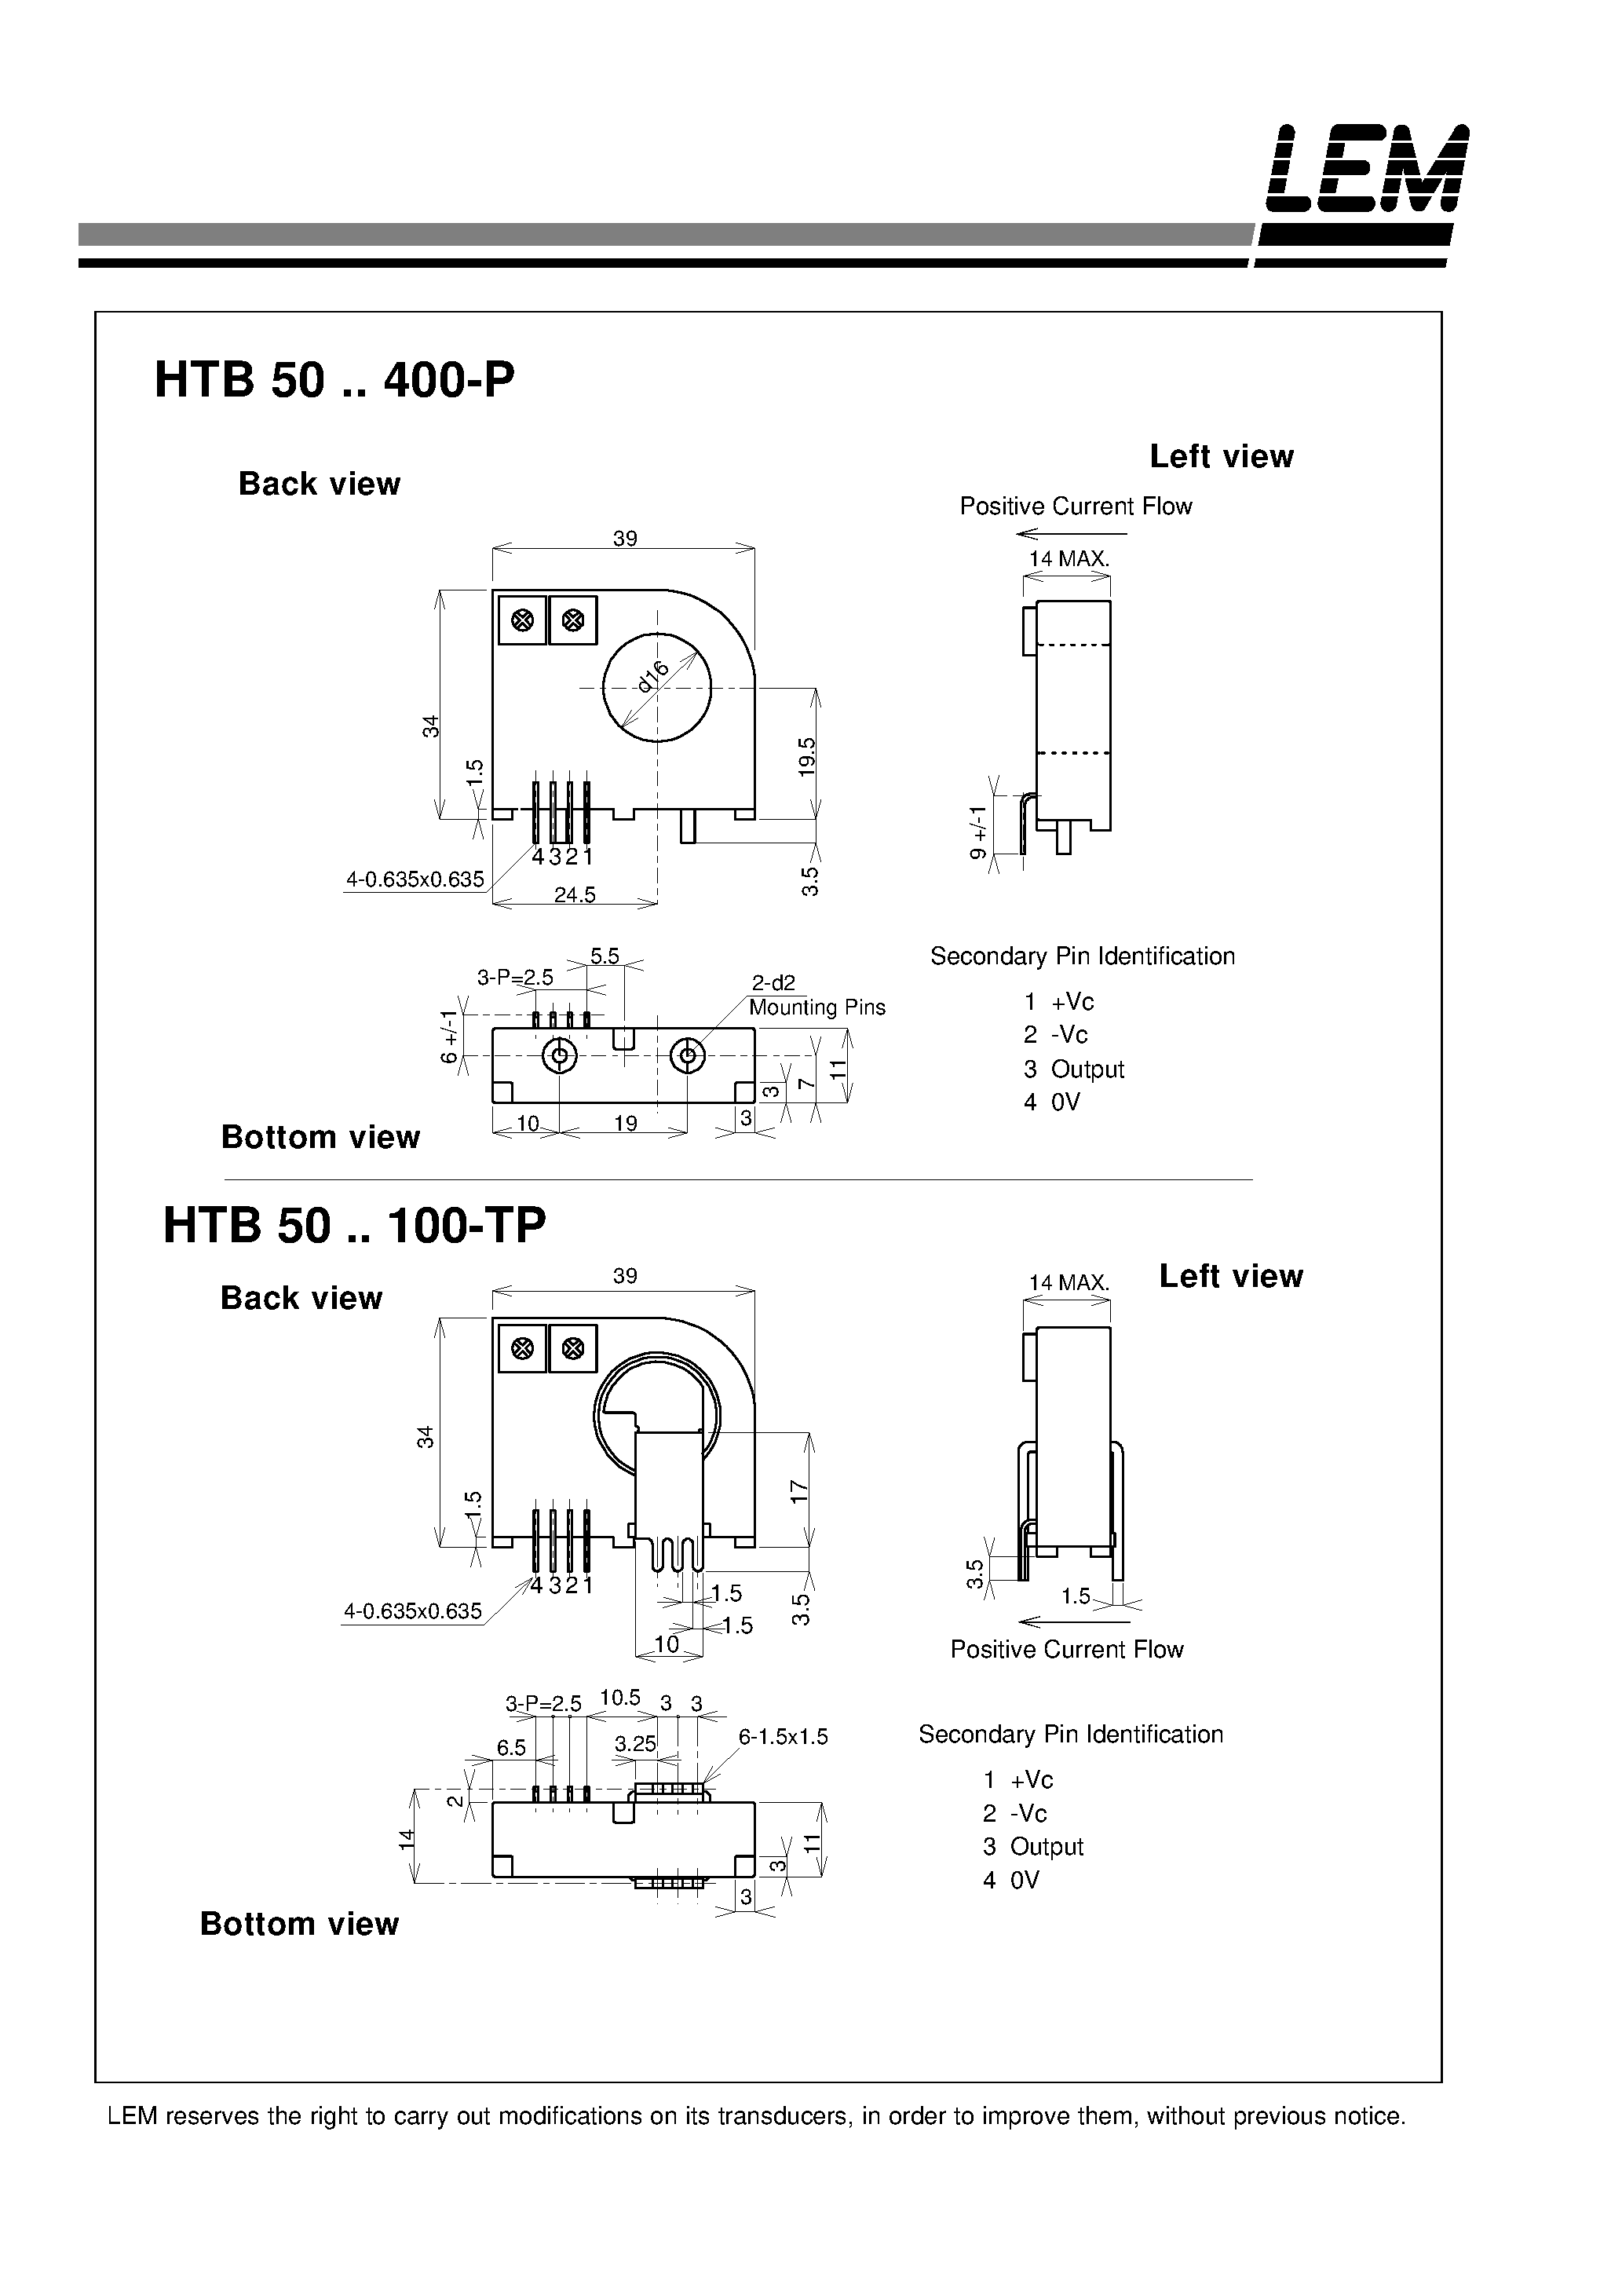 Даташит HTB200-P - Current Transducers HTB 50~400-P and HTB 50~100-TP страница 2